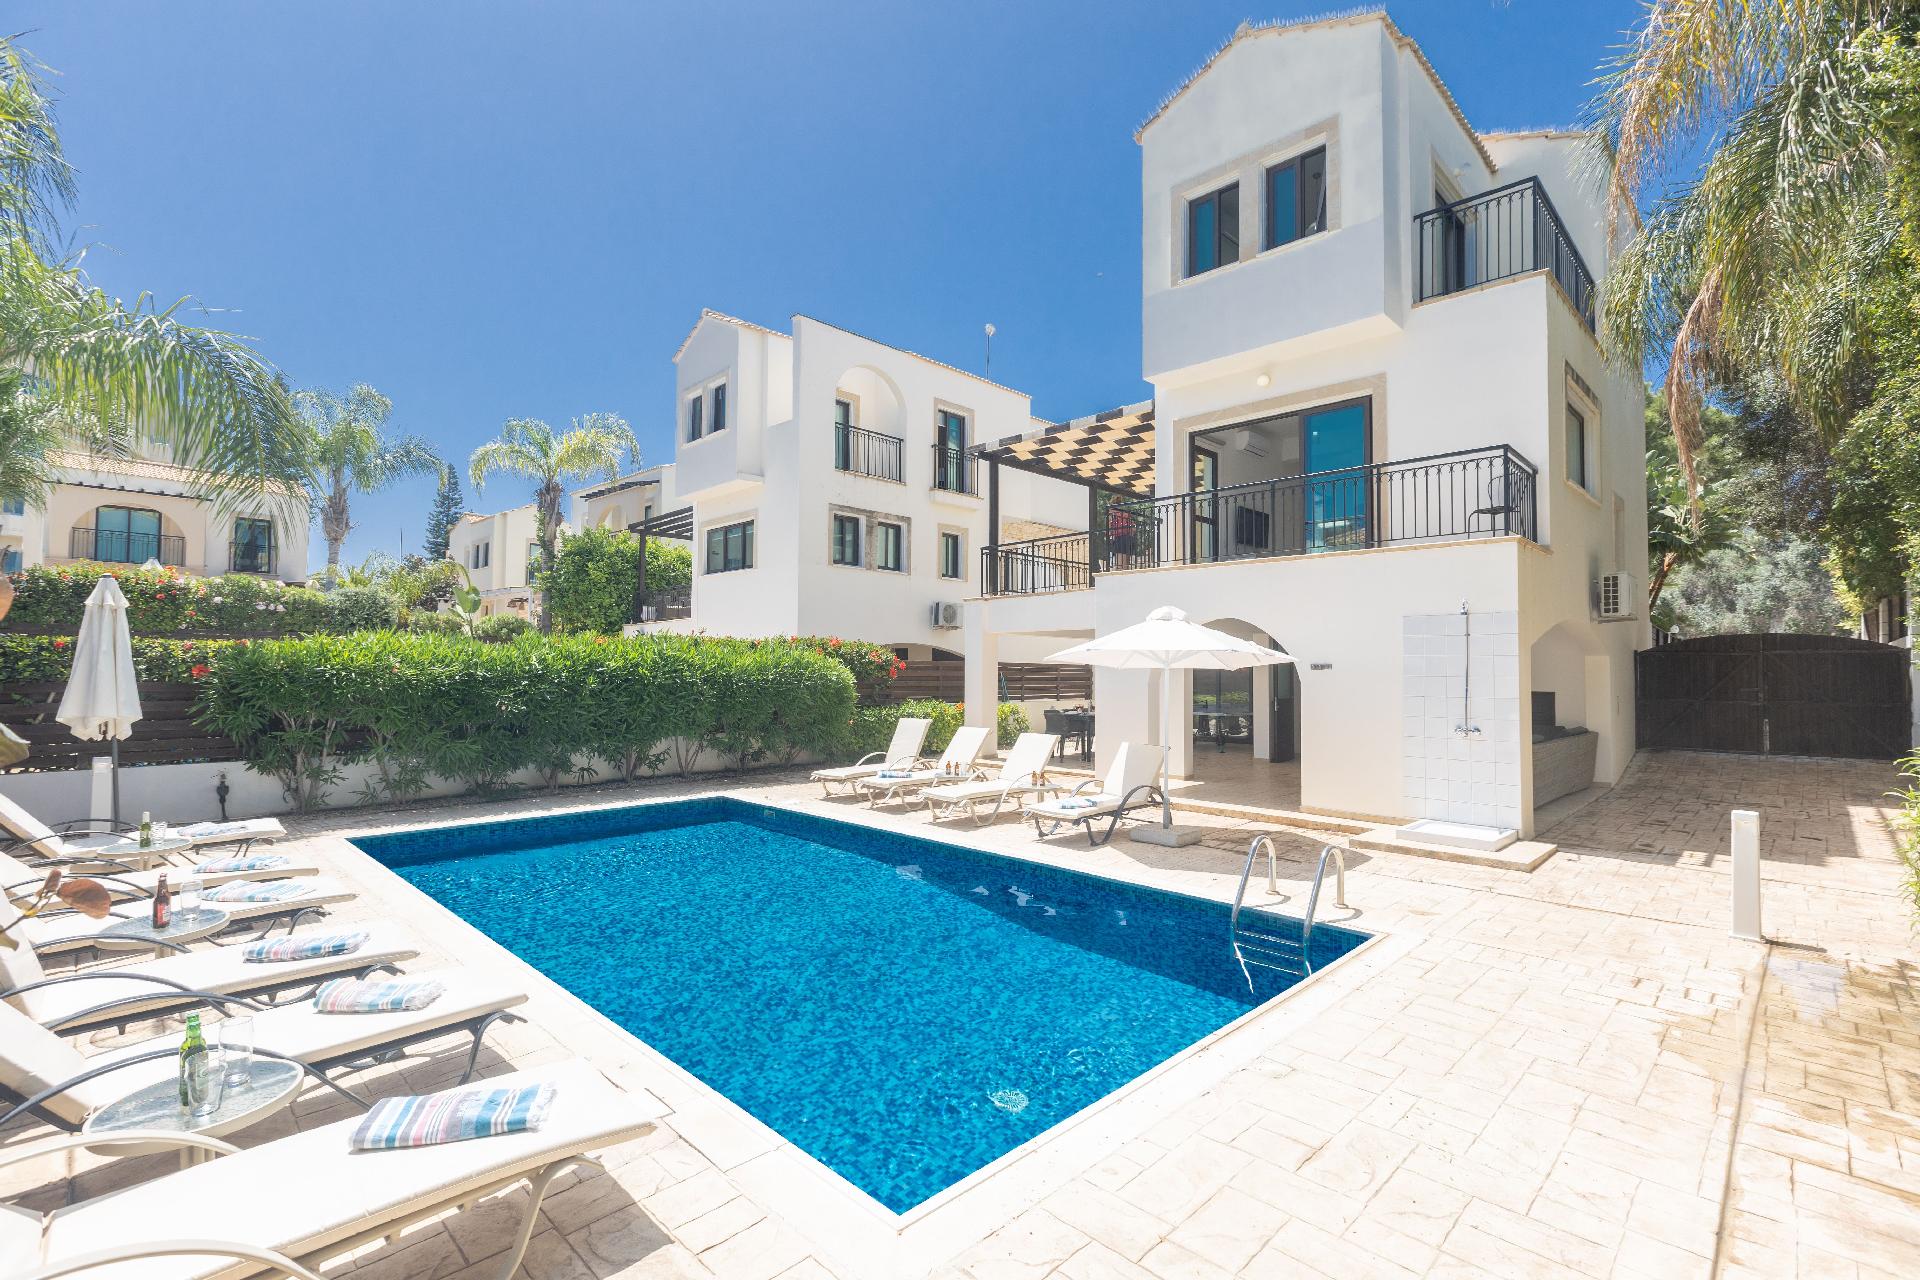 Ferienhaus mit Privatpool für 10 Personen ca. Ferienhaus in Zypern